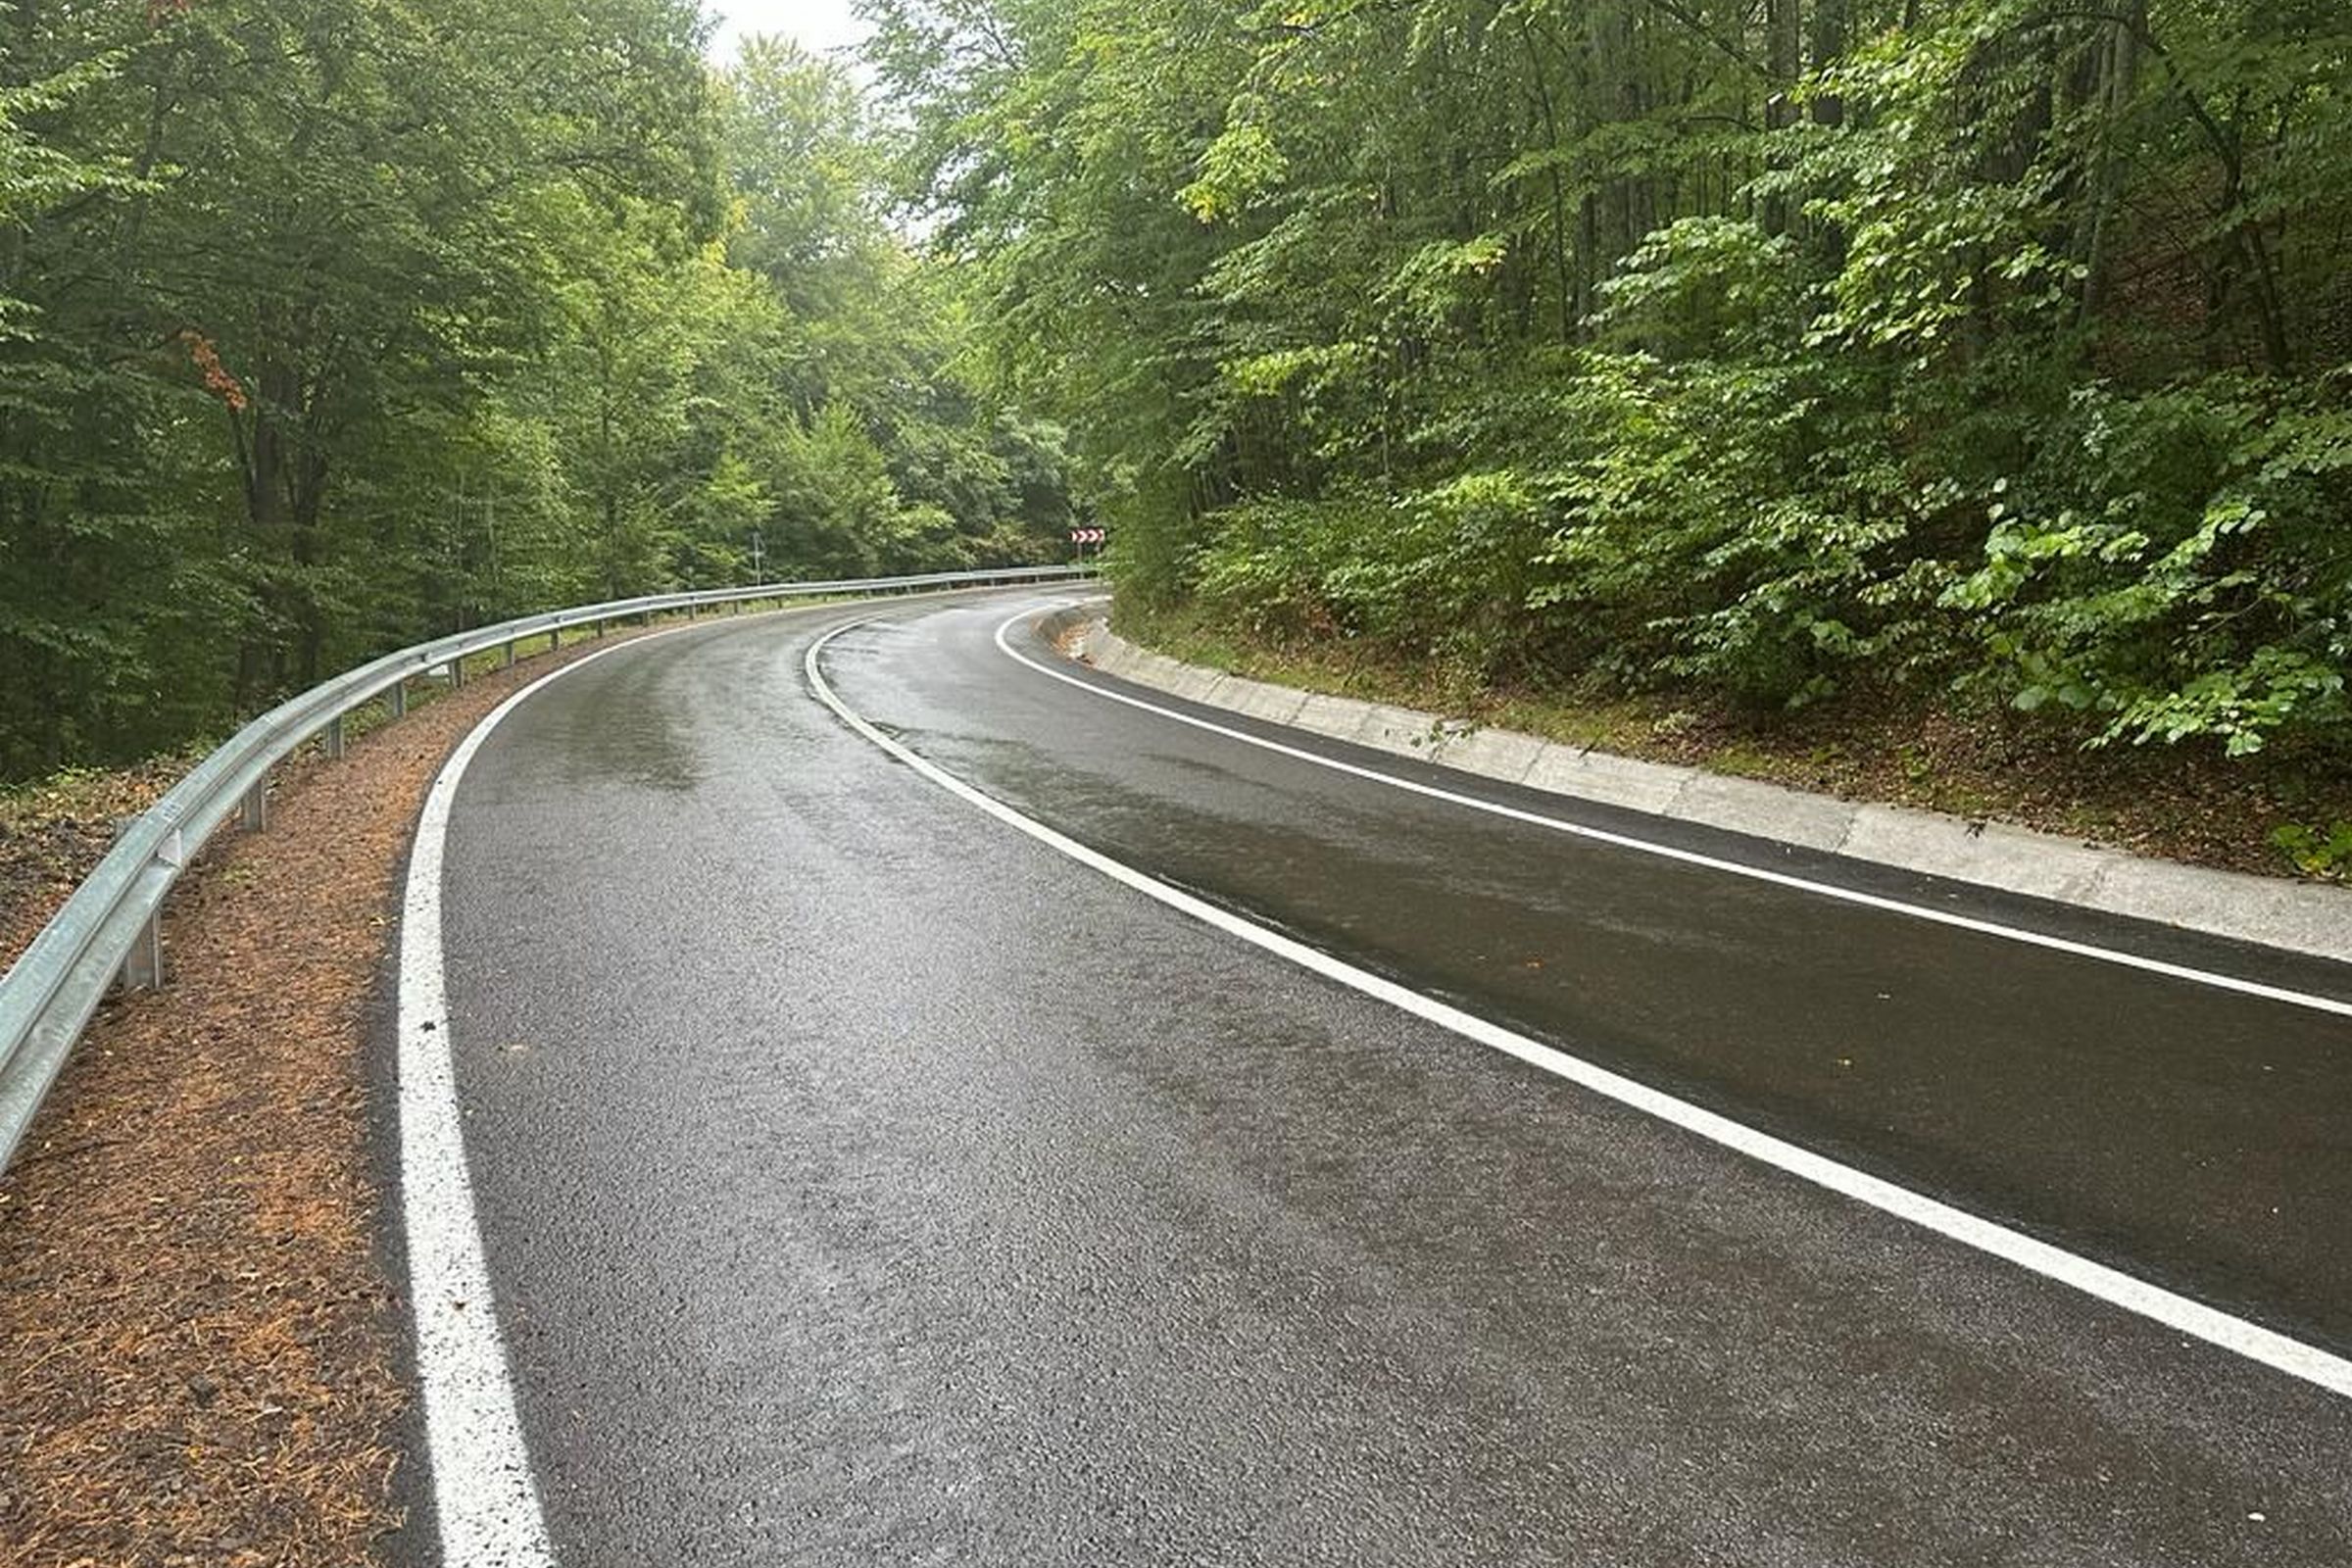 Mintegy ötven kilométer megyei út javításának munkálatai léptek következő szakaszba